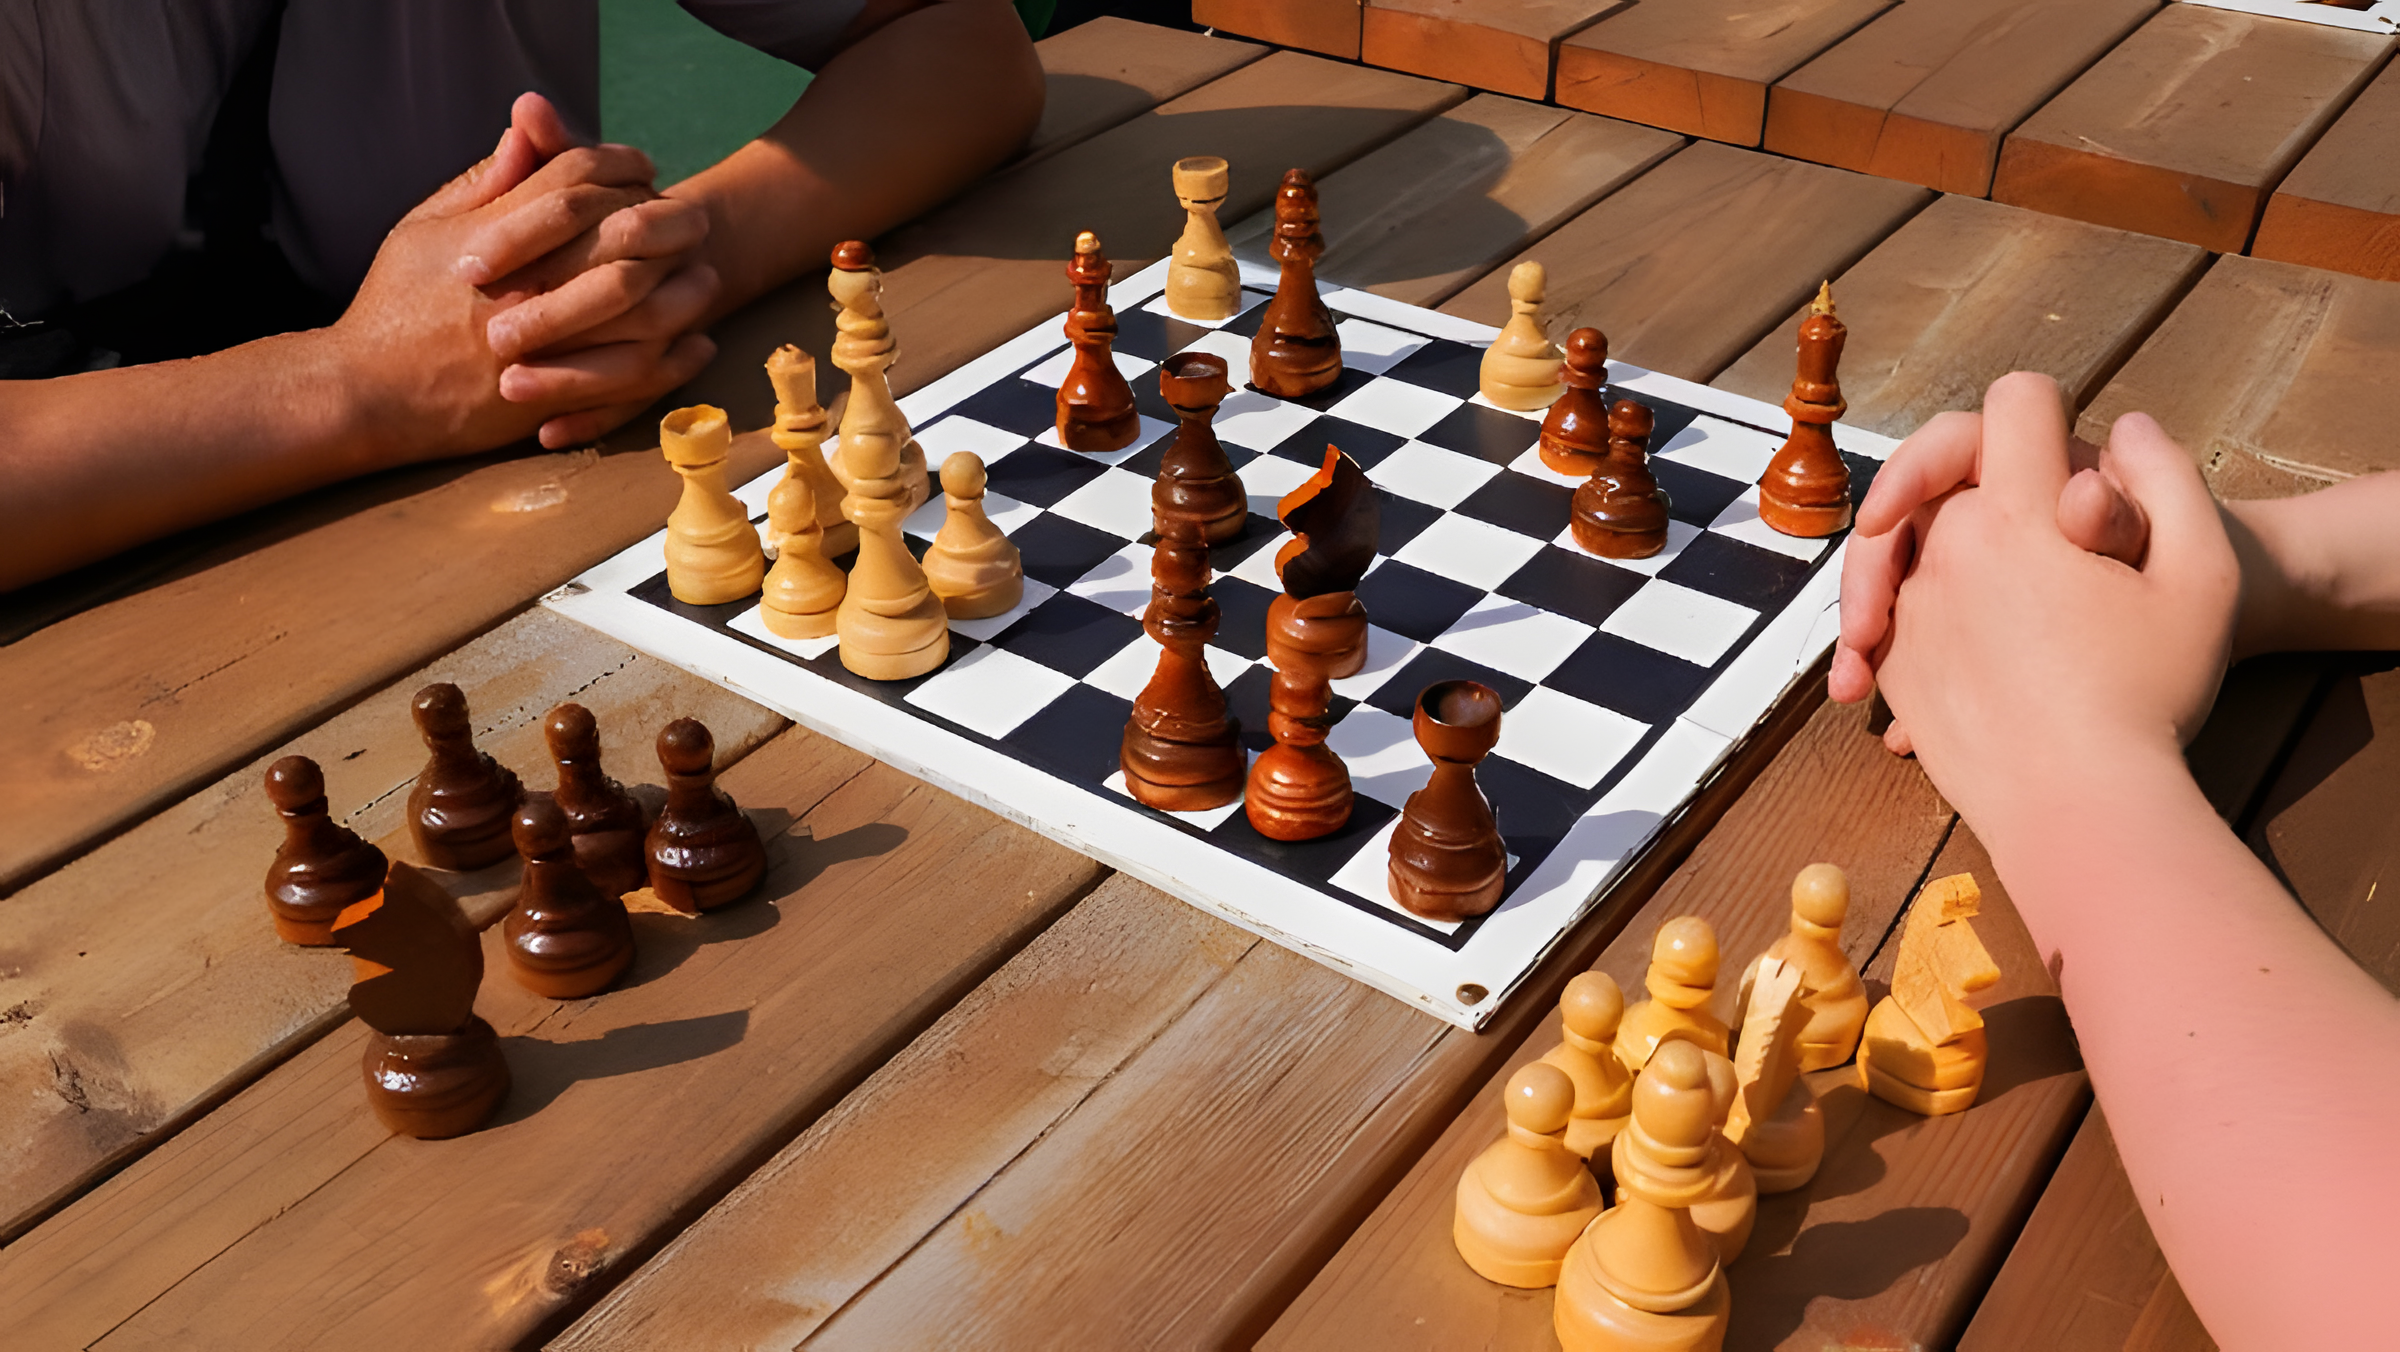 Турнир «День шахмат» состоится 20 июля во Дворце культуры городского округа Щербинка